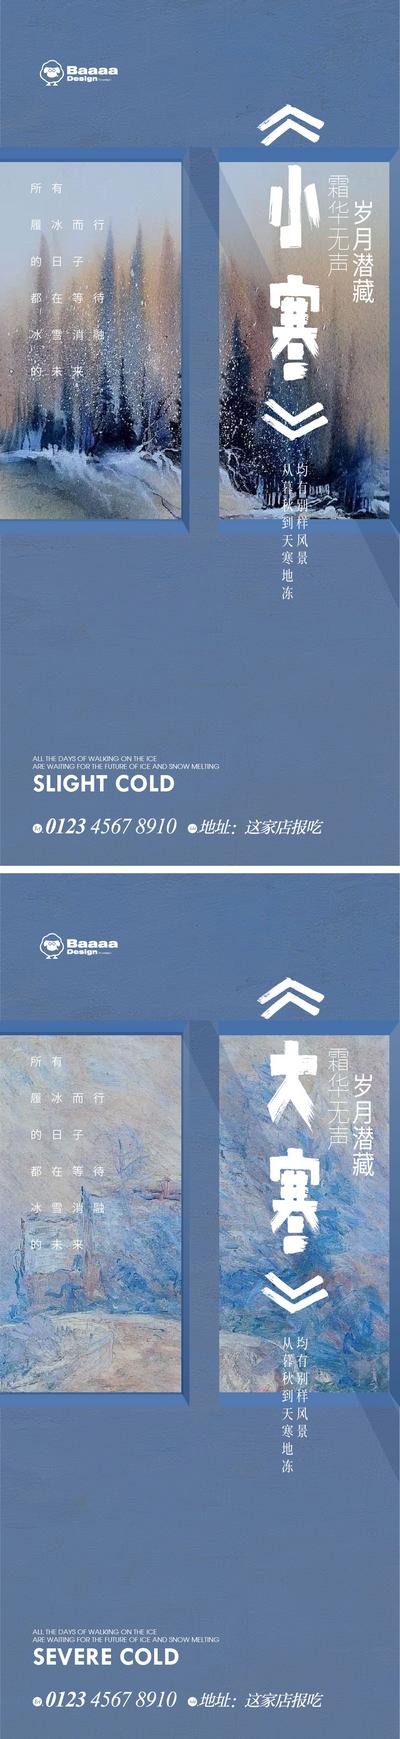 南门网 节气 系列 小寒 大寒 版式 刷屏 微信 传统节日 参考 冬 雪